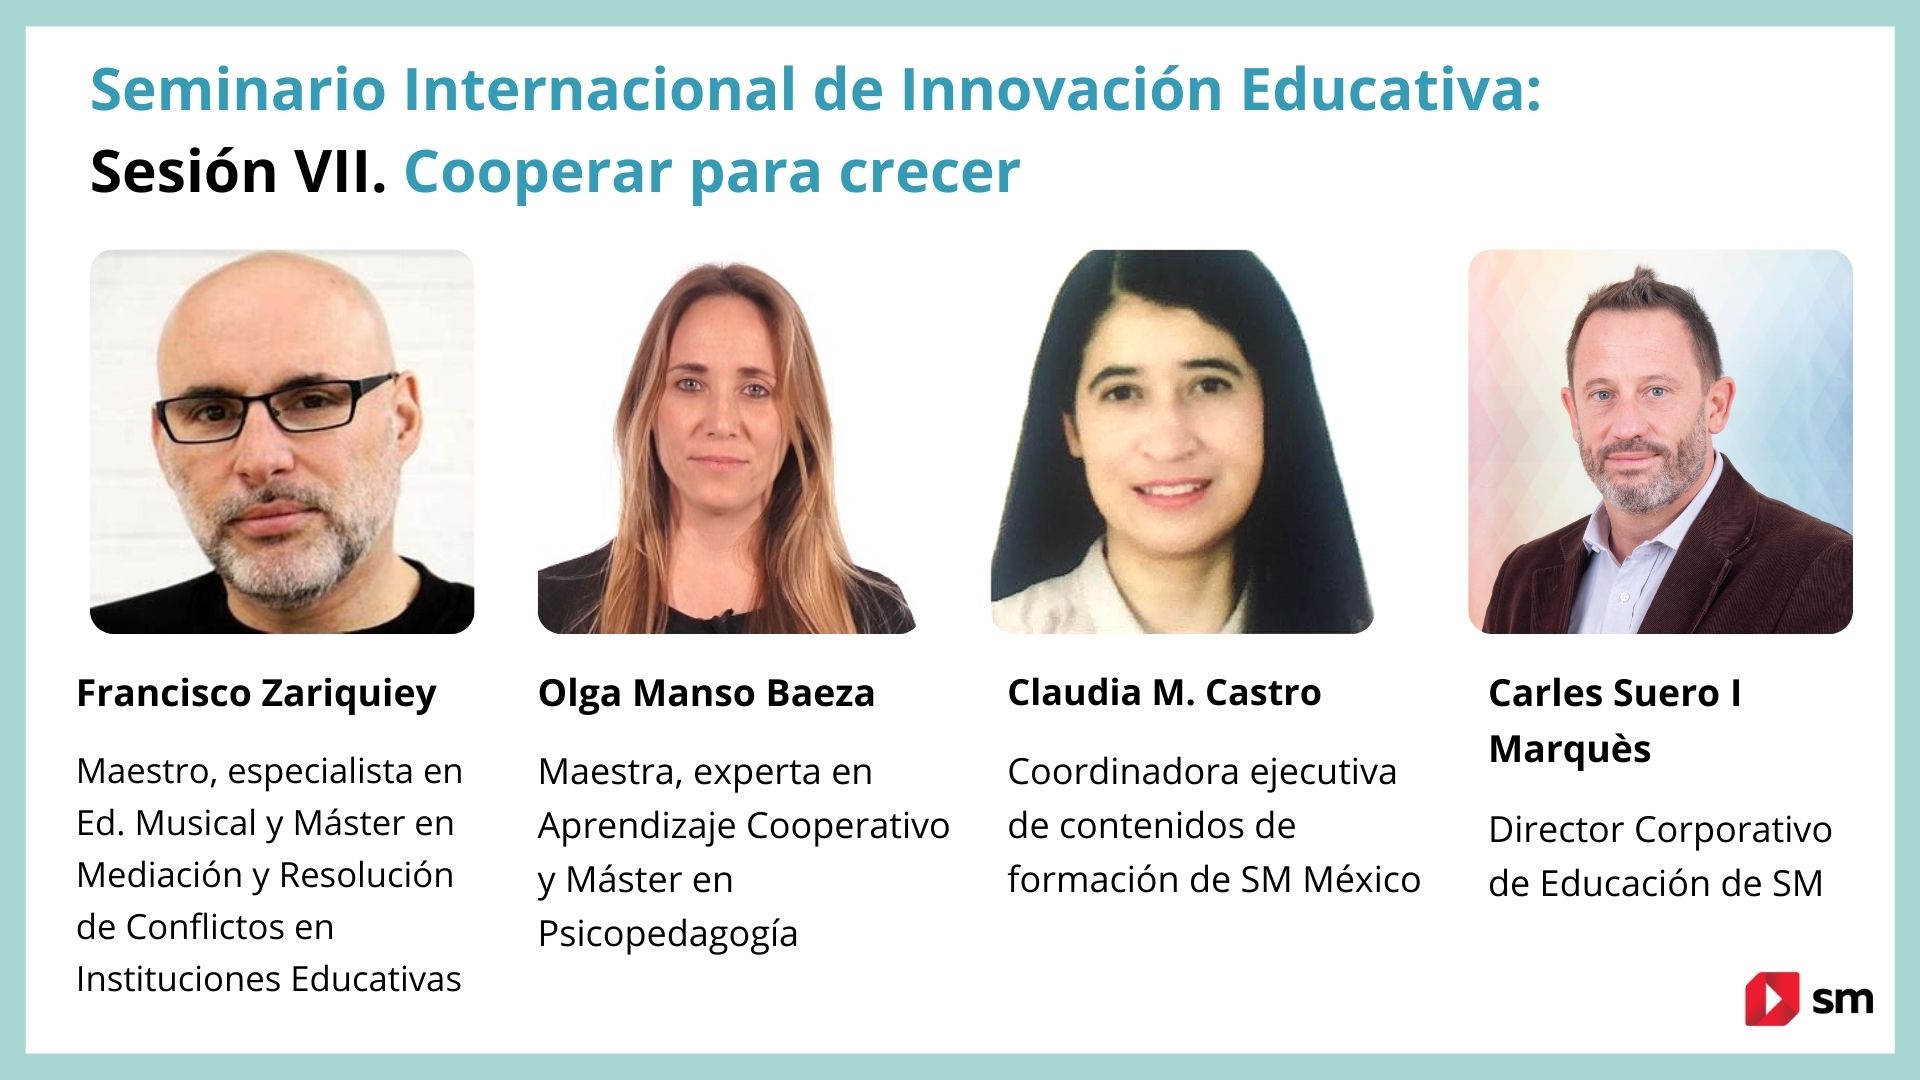 Seminario Internacional de Innovación Educativa sobre Cooperar para crecer